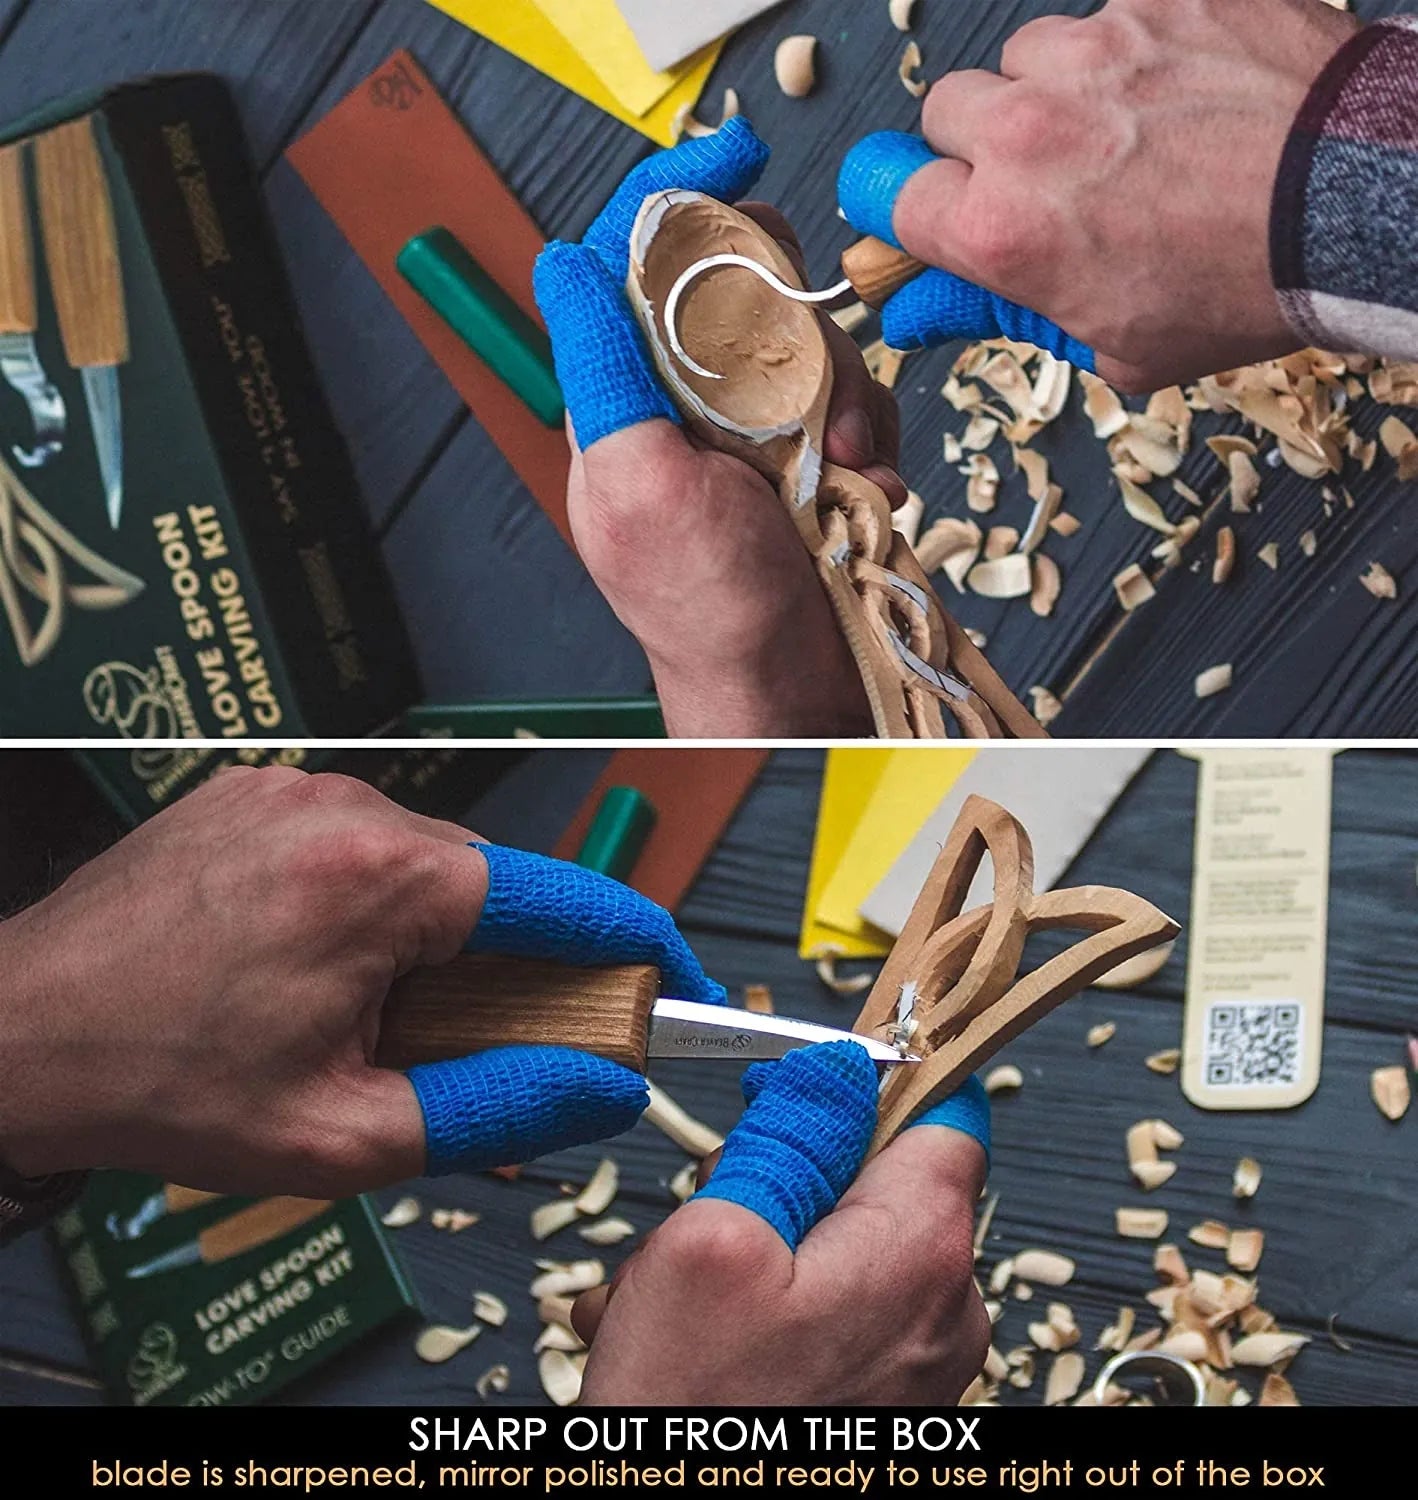 Celtic Spoon Carving Kit Complete Starter Whittling Kit for